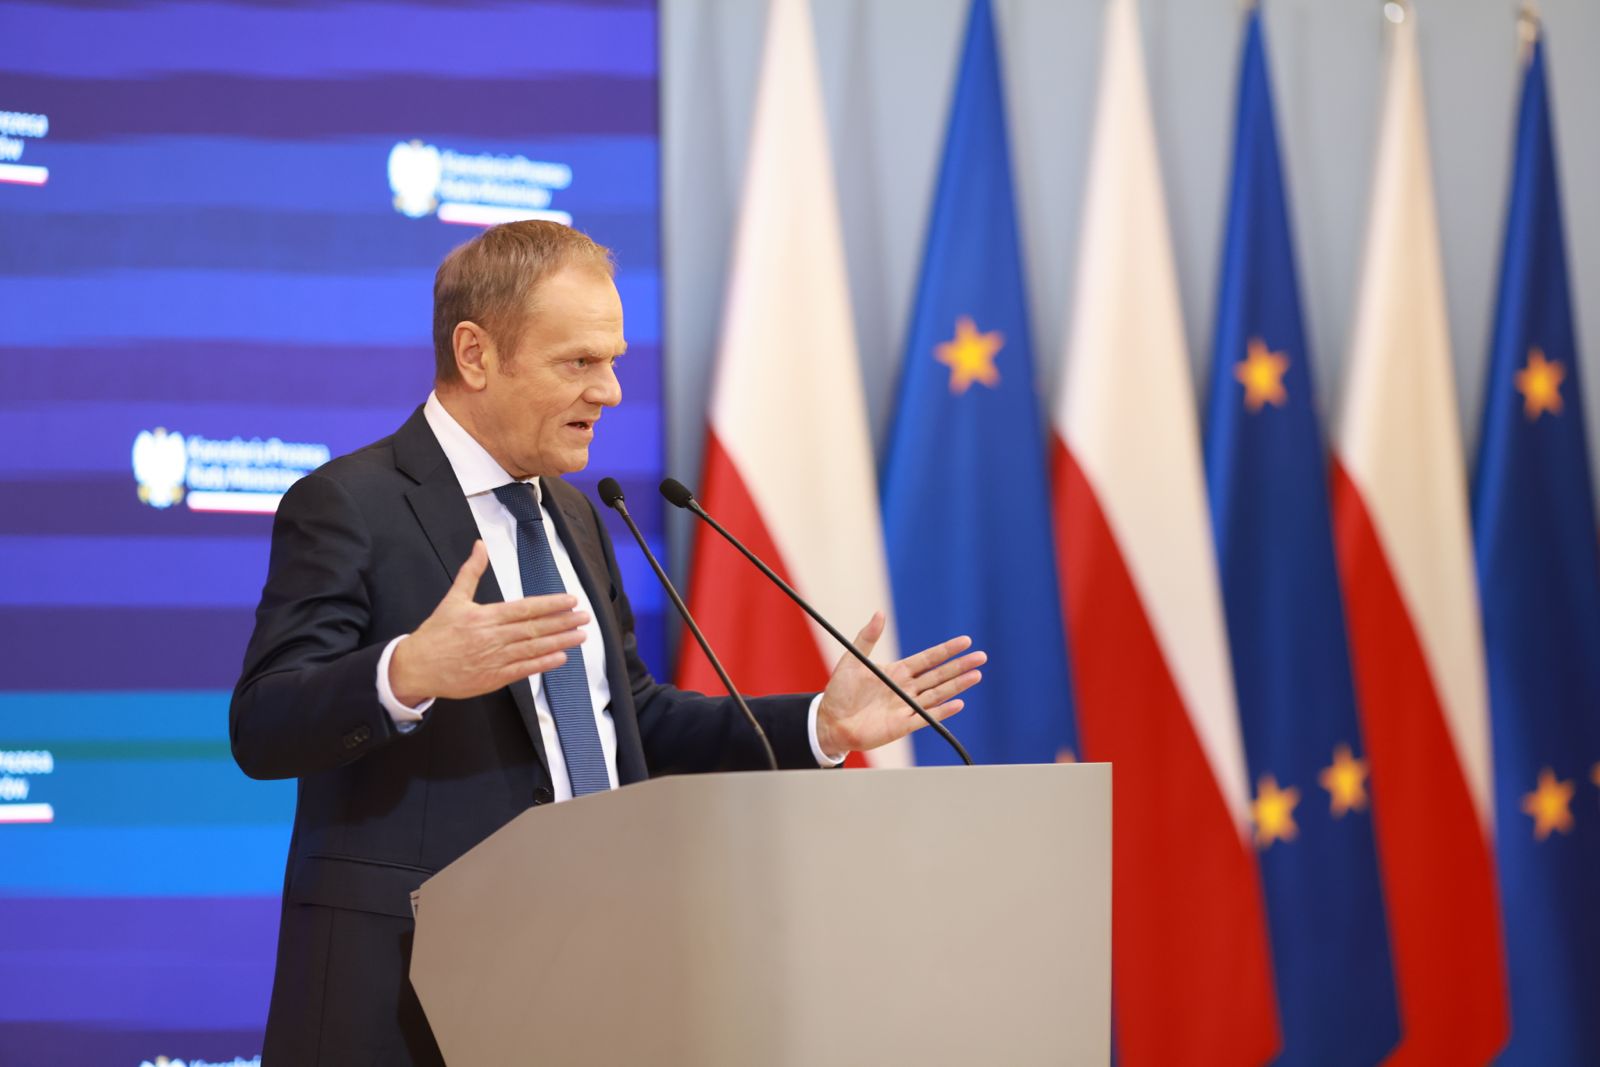 Polski premier Tusk mówi, że „przetrwanie cywilizacji zachodniej” zależy od powstrzymania niekontrolowanej migracji